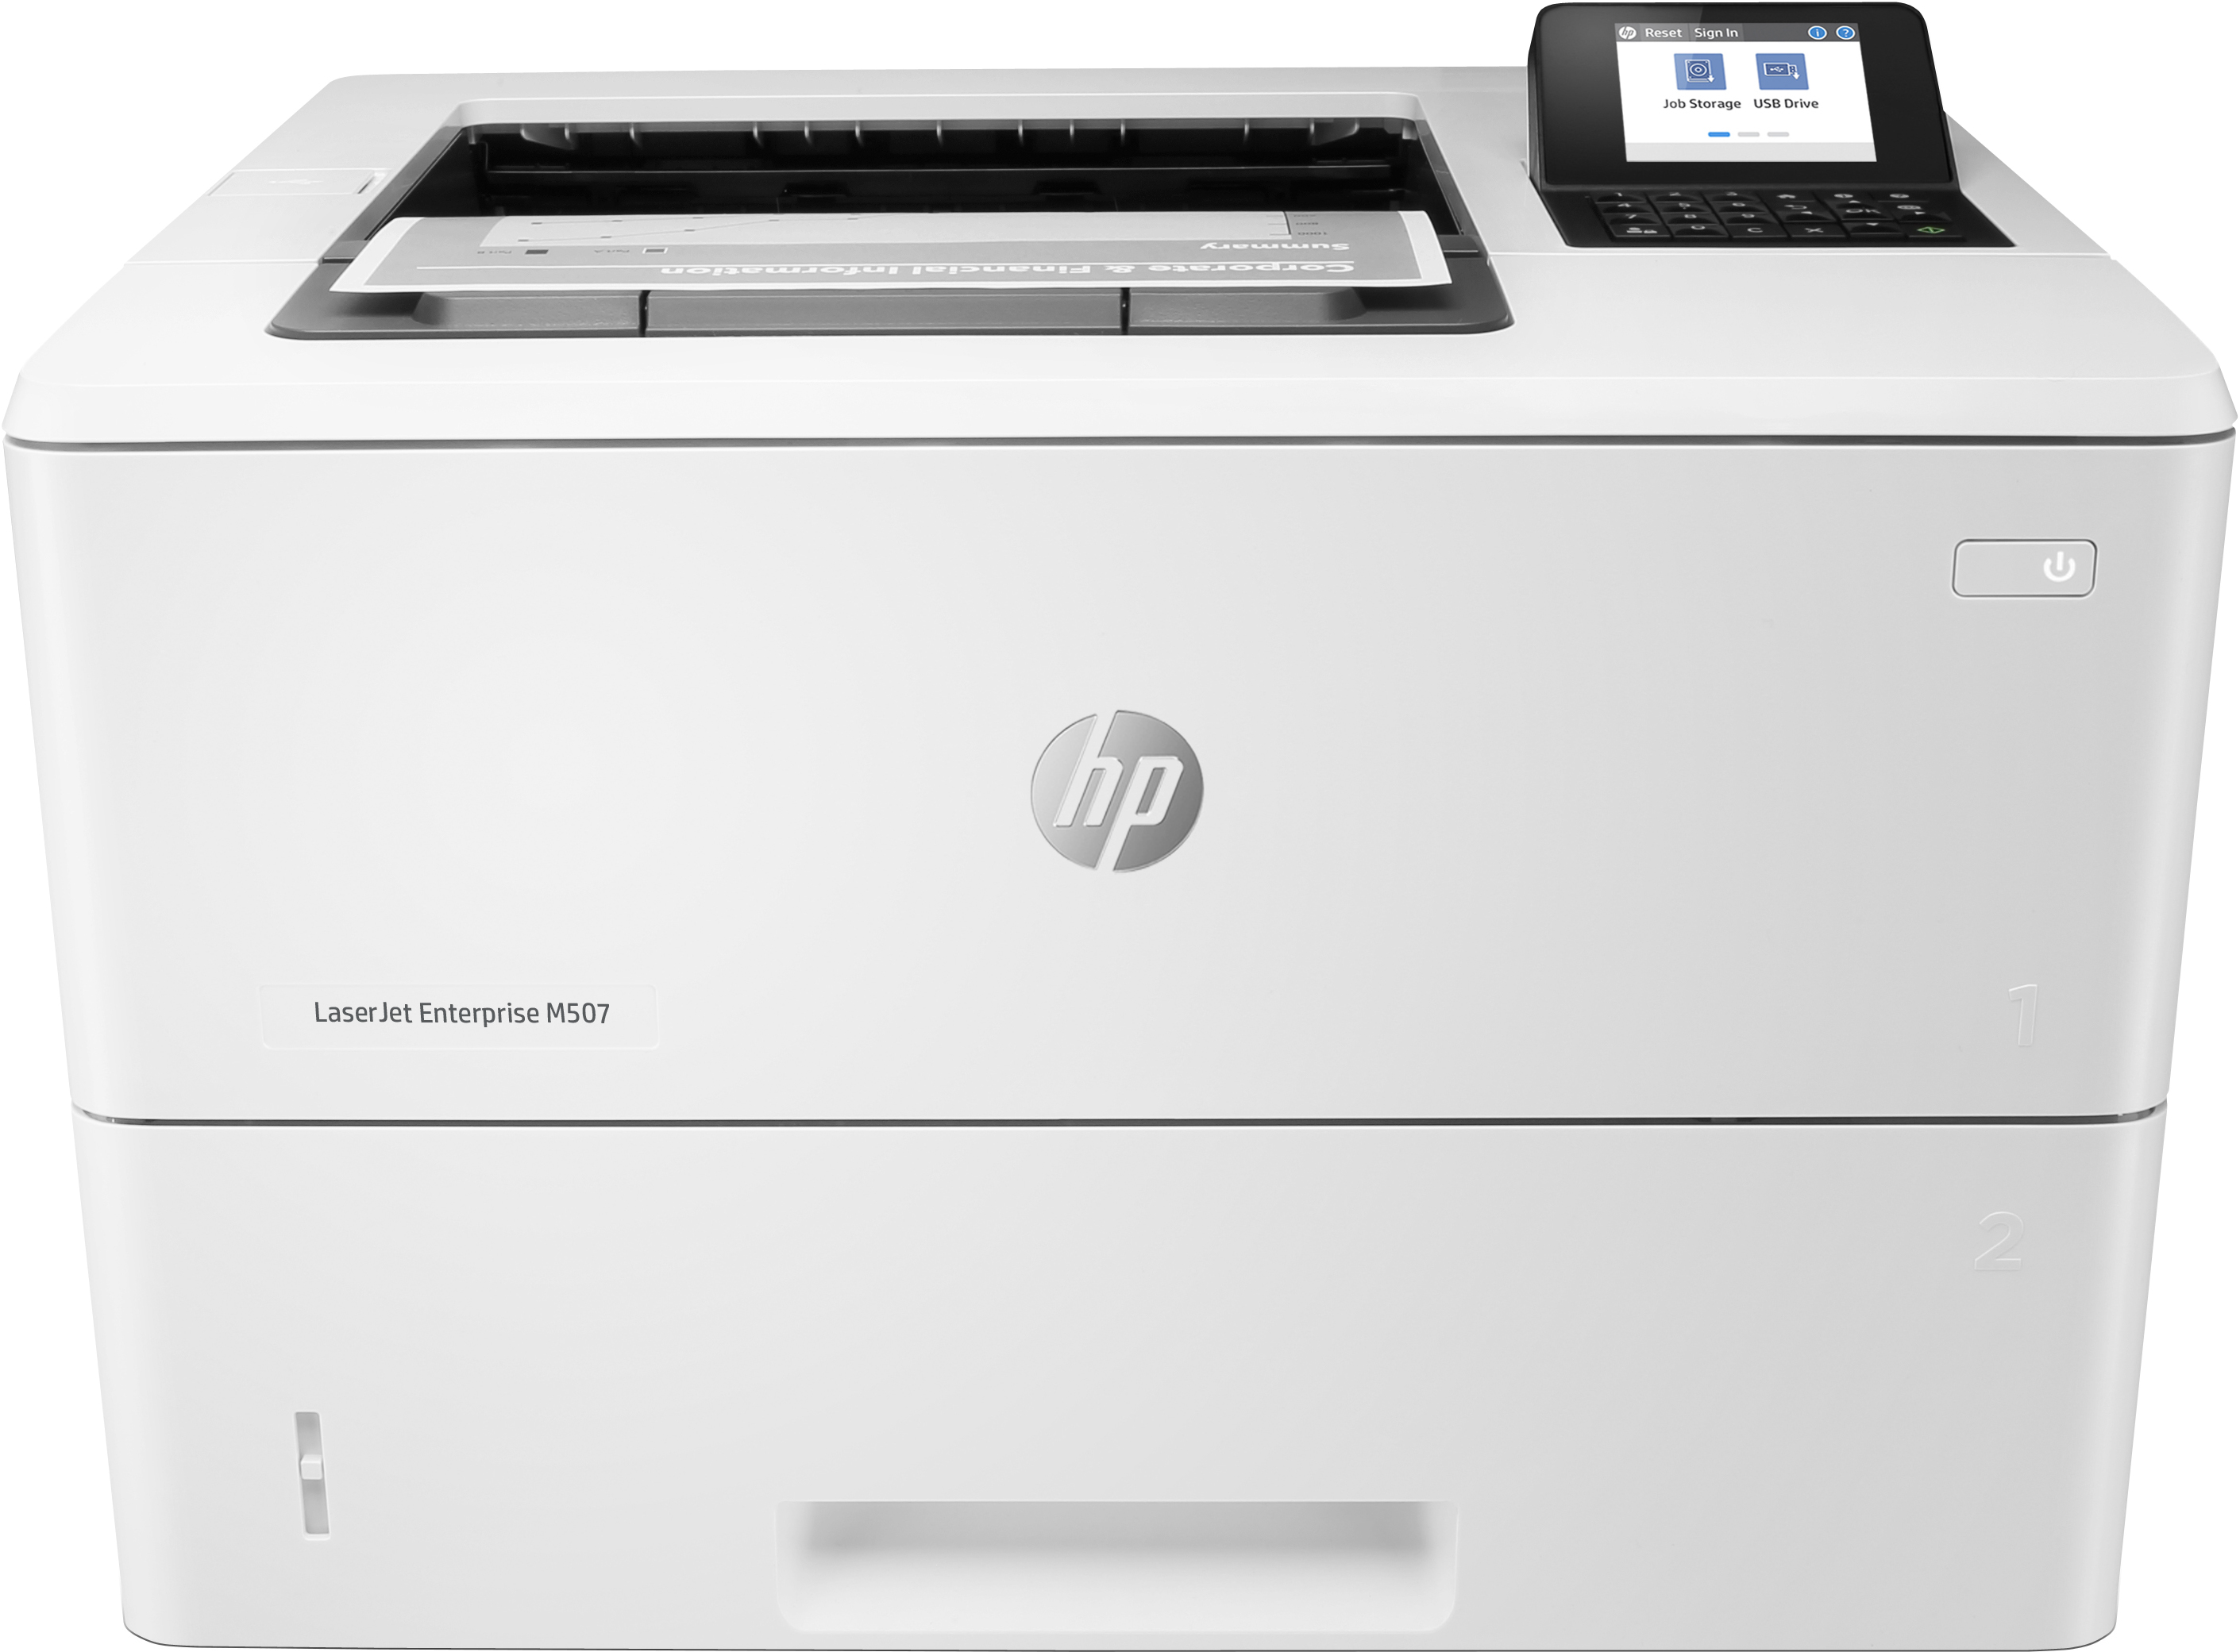 Image of HP LaserJet Enterprise M507dn, Bianco e nero, Stampante per Stampa, Stampa fronte/retro